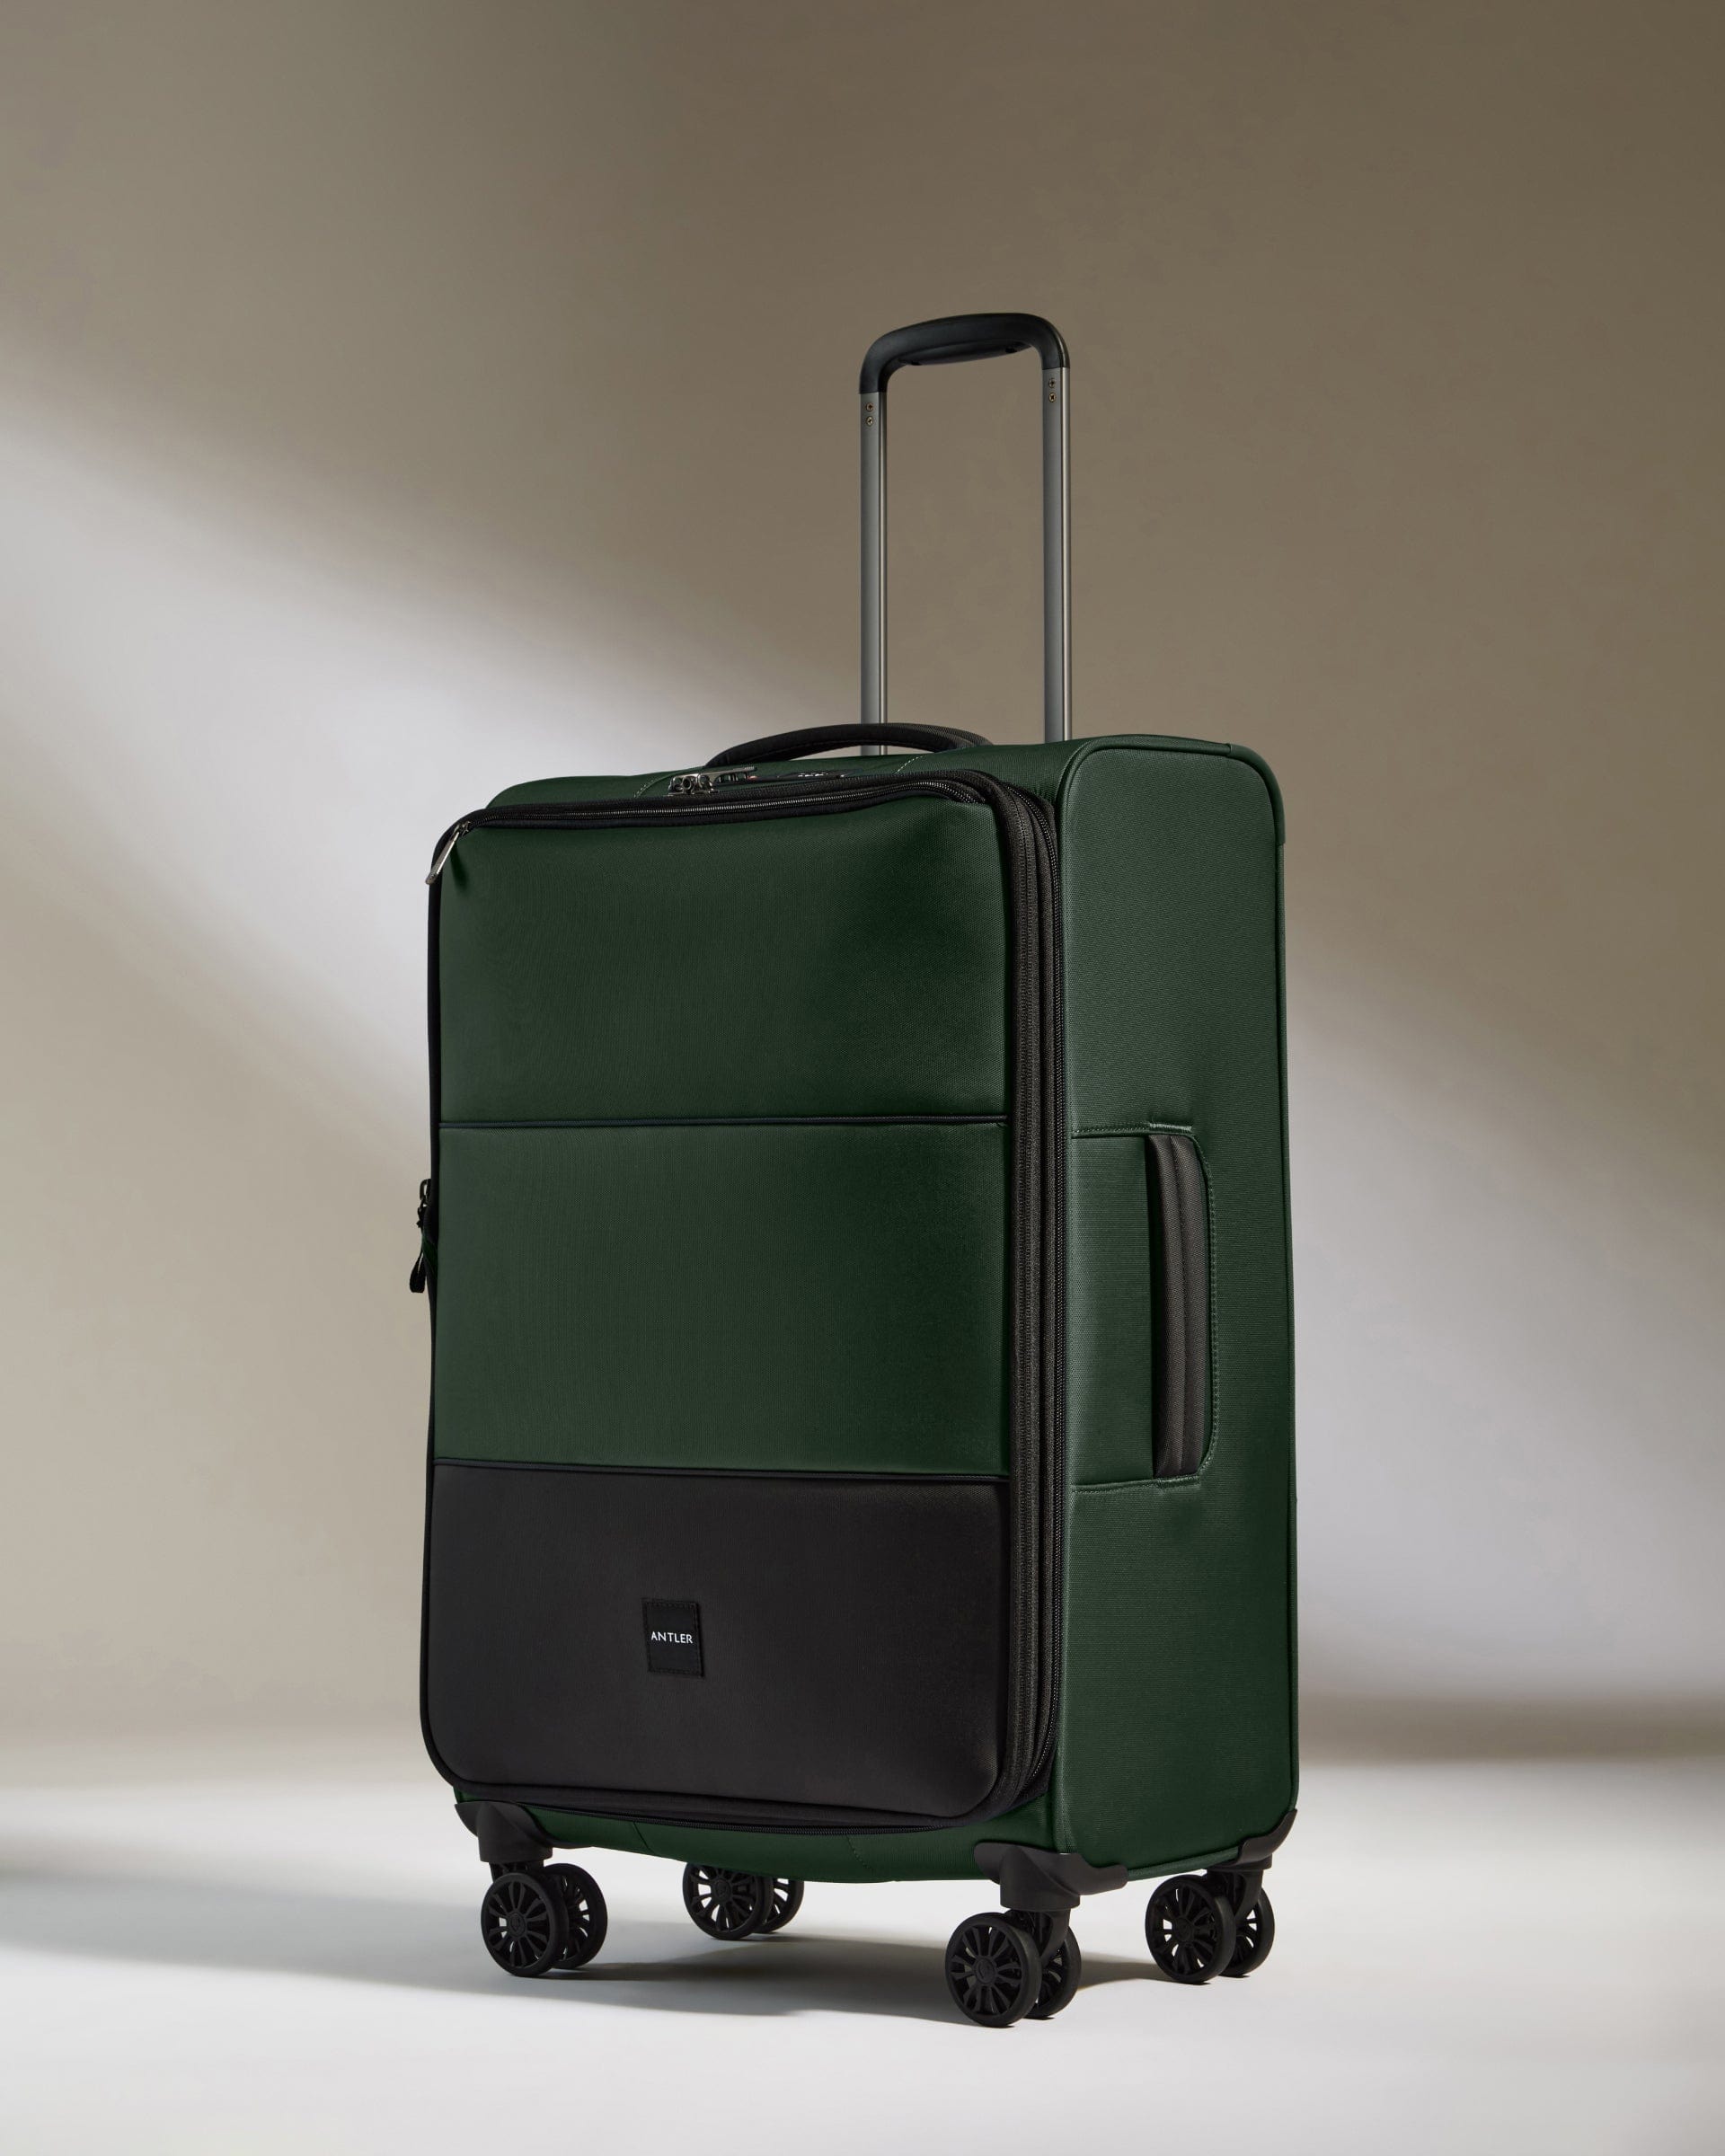 View Soft Stripe Medium Suitcase In Antler Green Size 28cm x 71cm x 435cm information